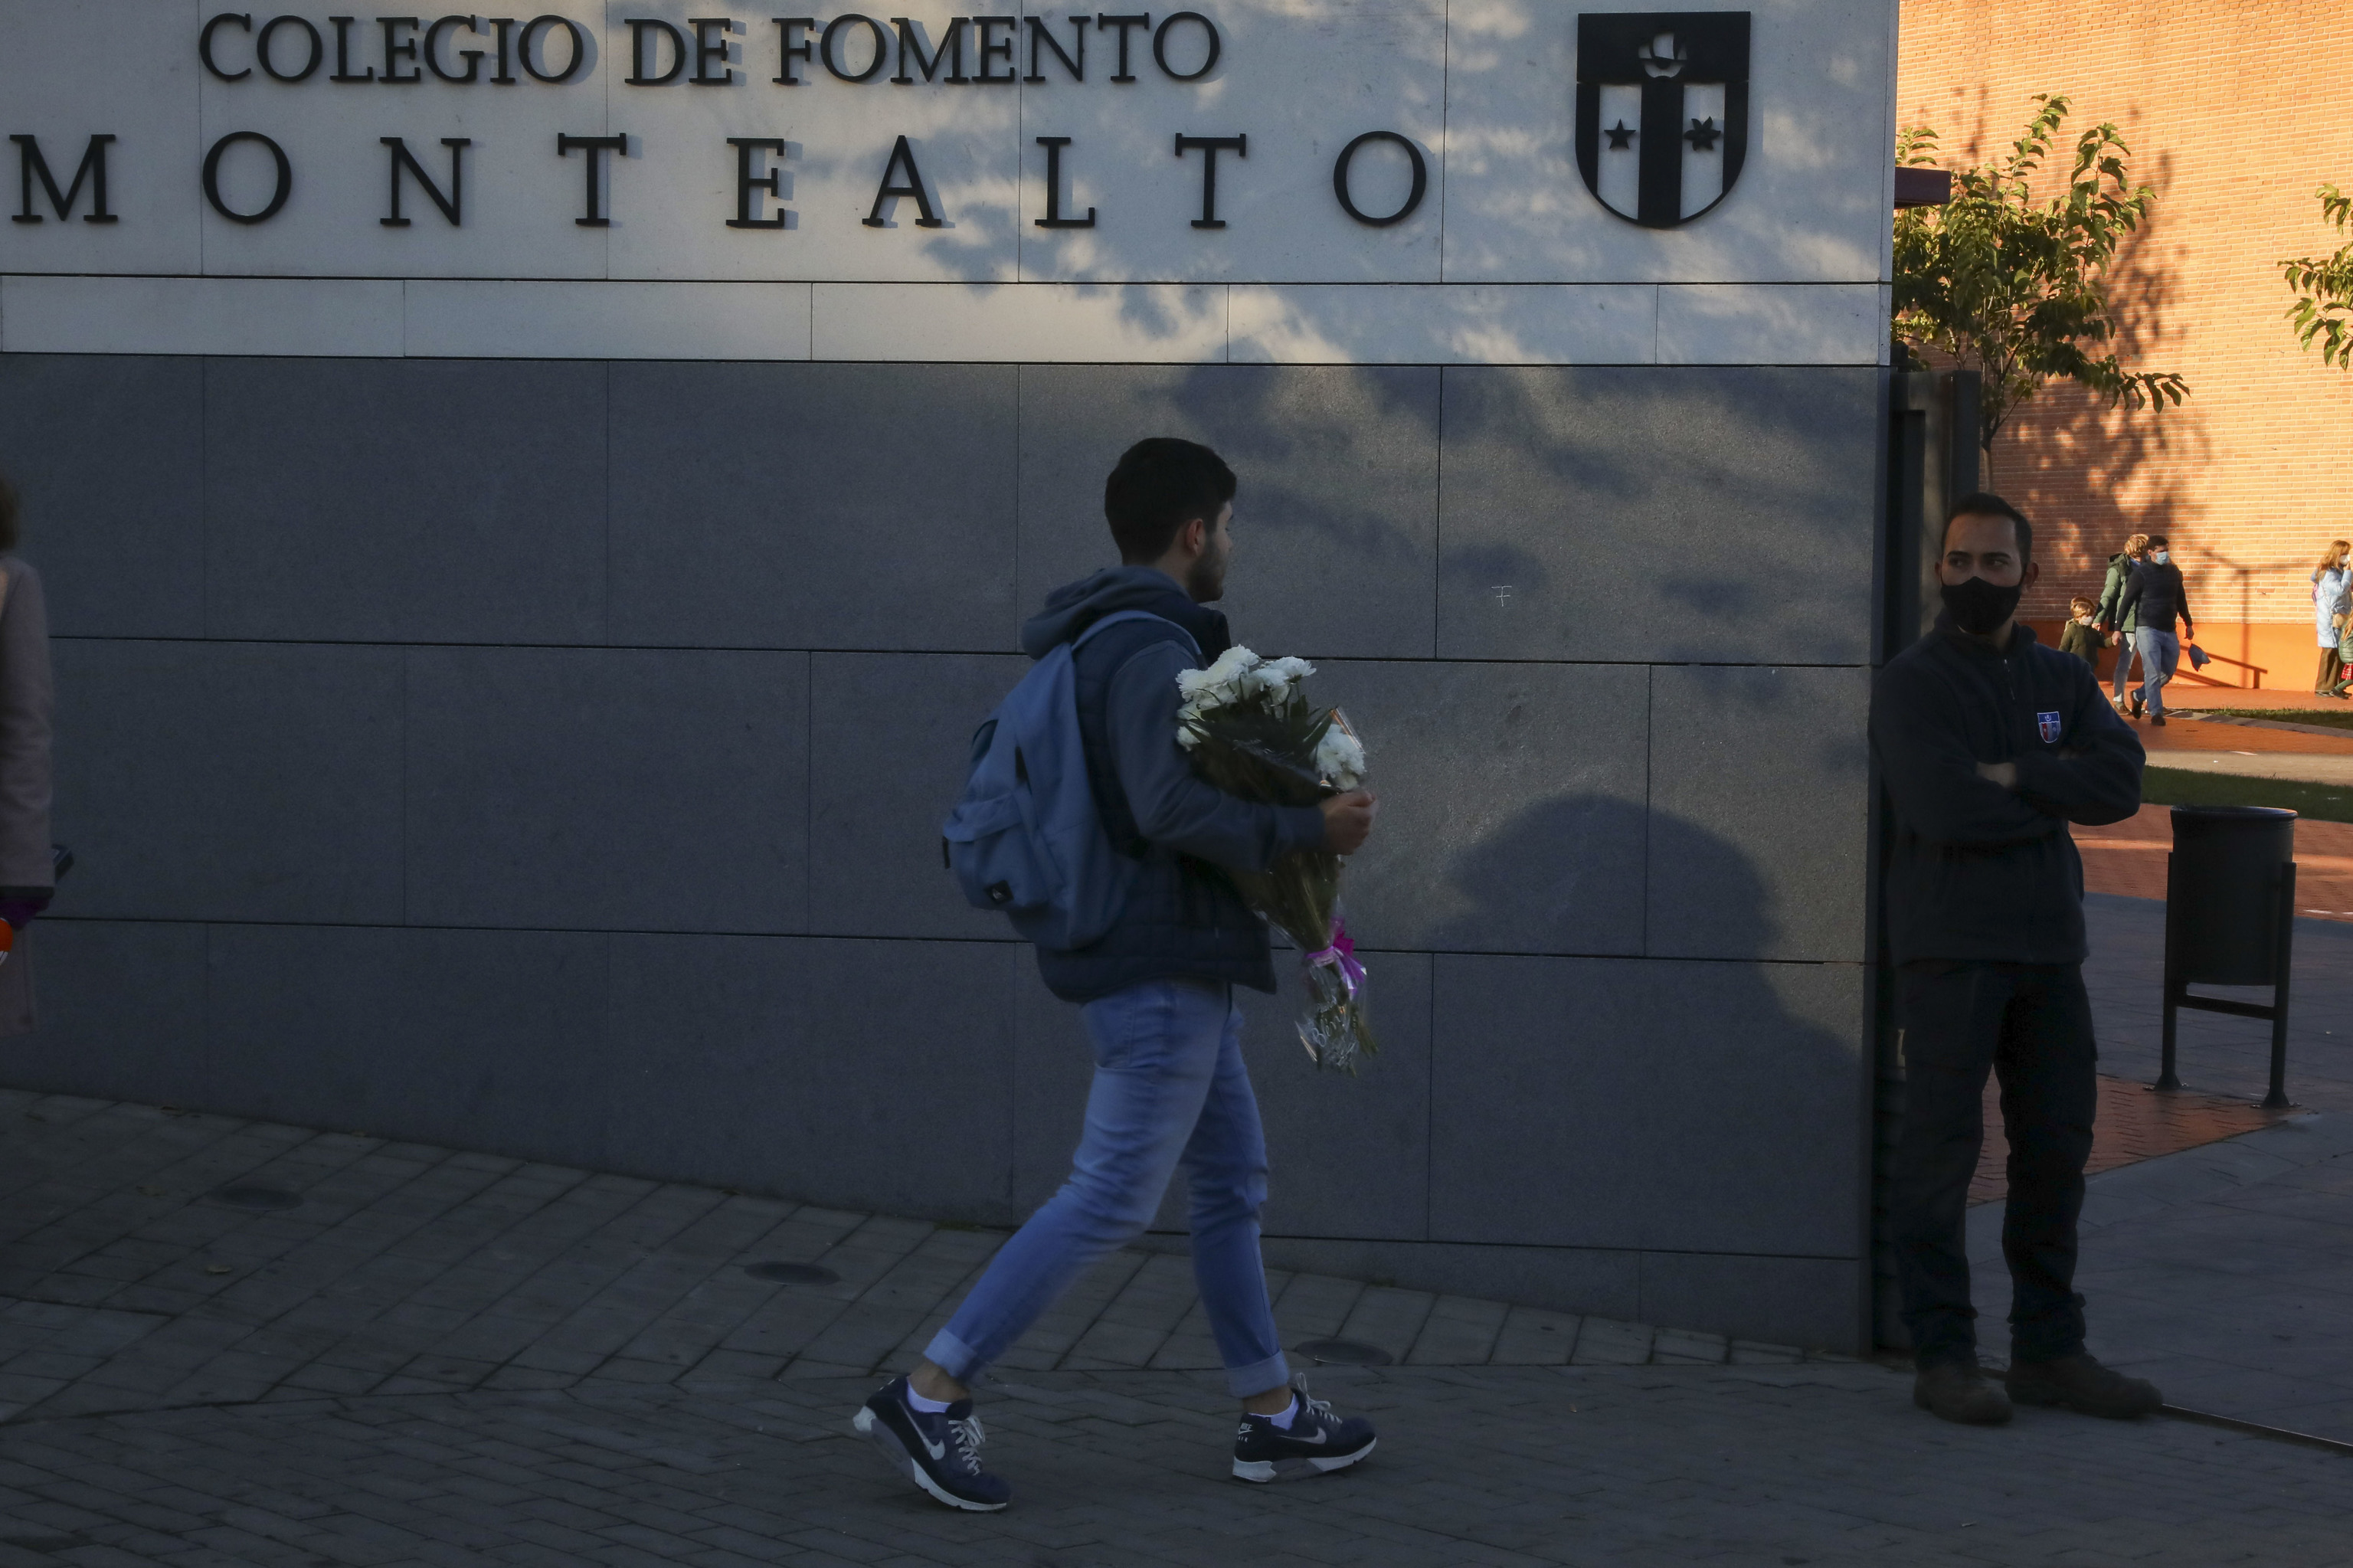 Un estudiante lleva flores al colegio Montealto.